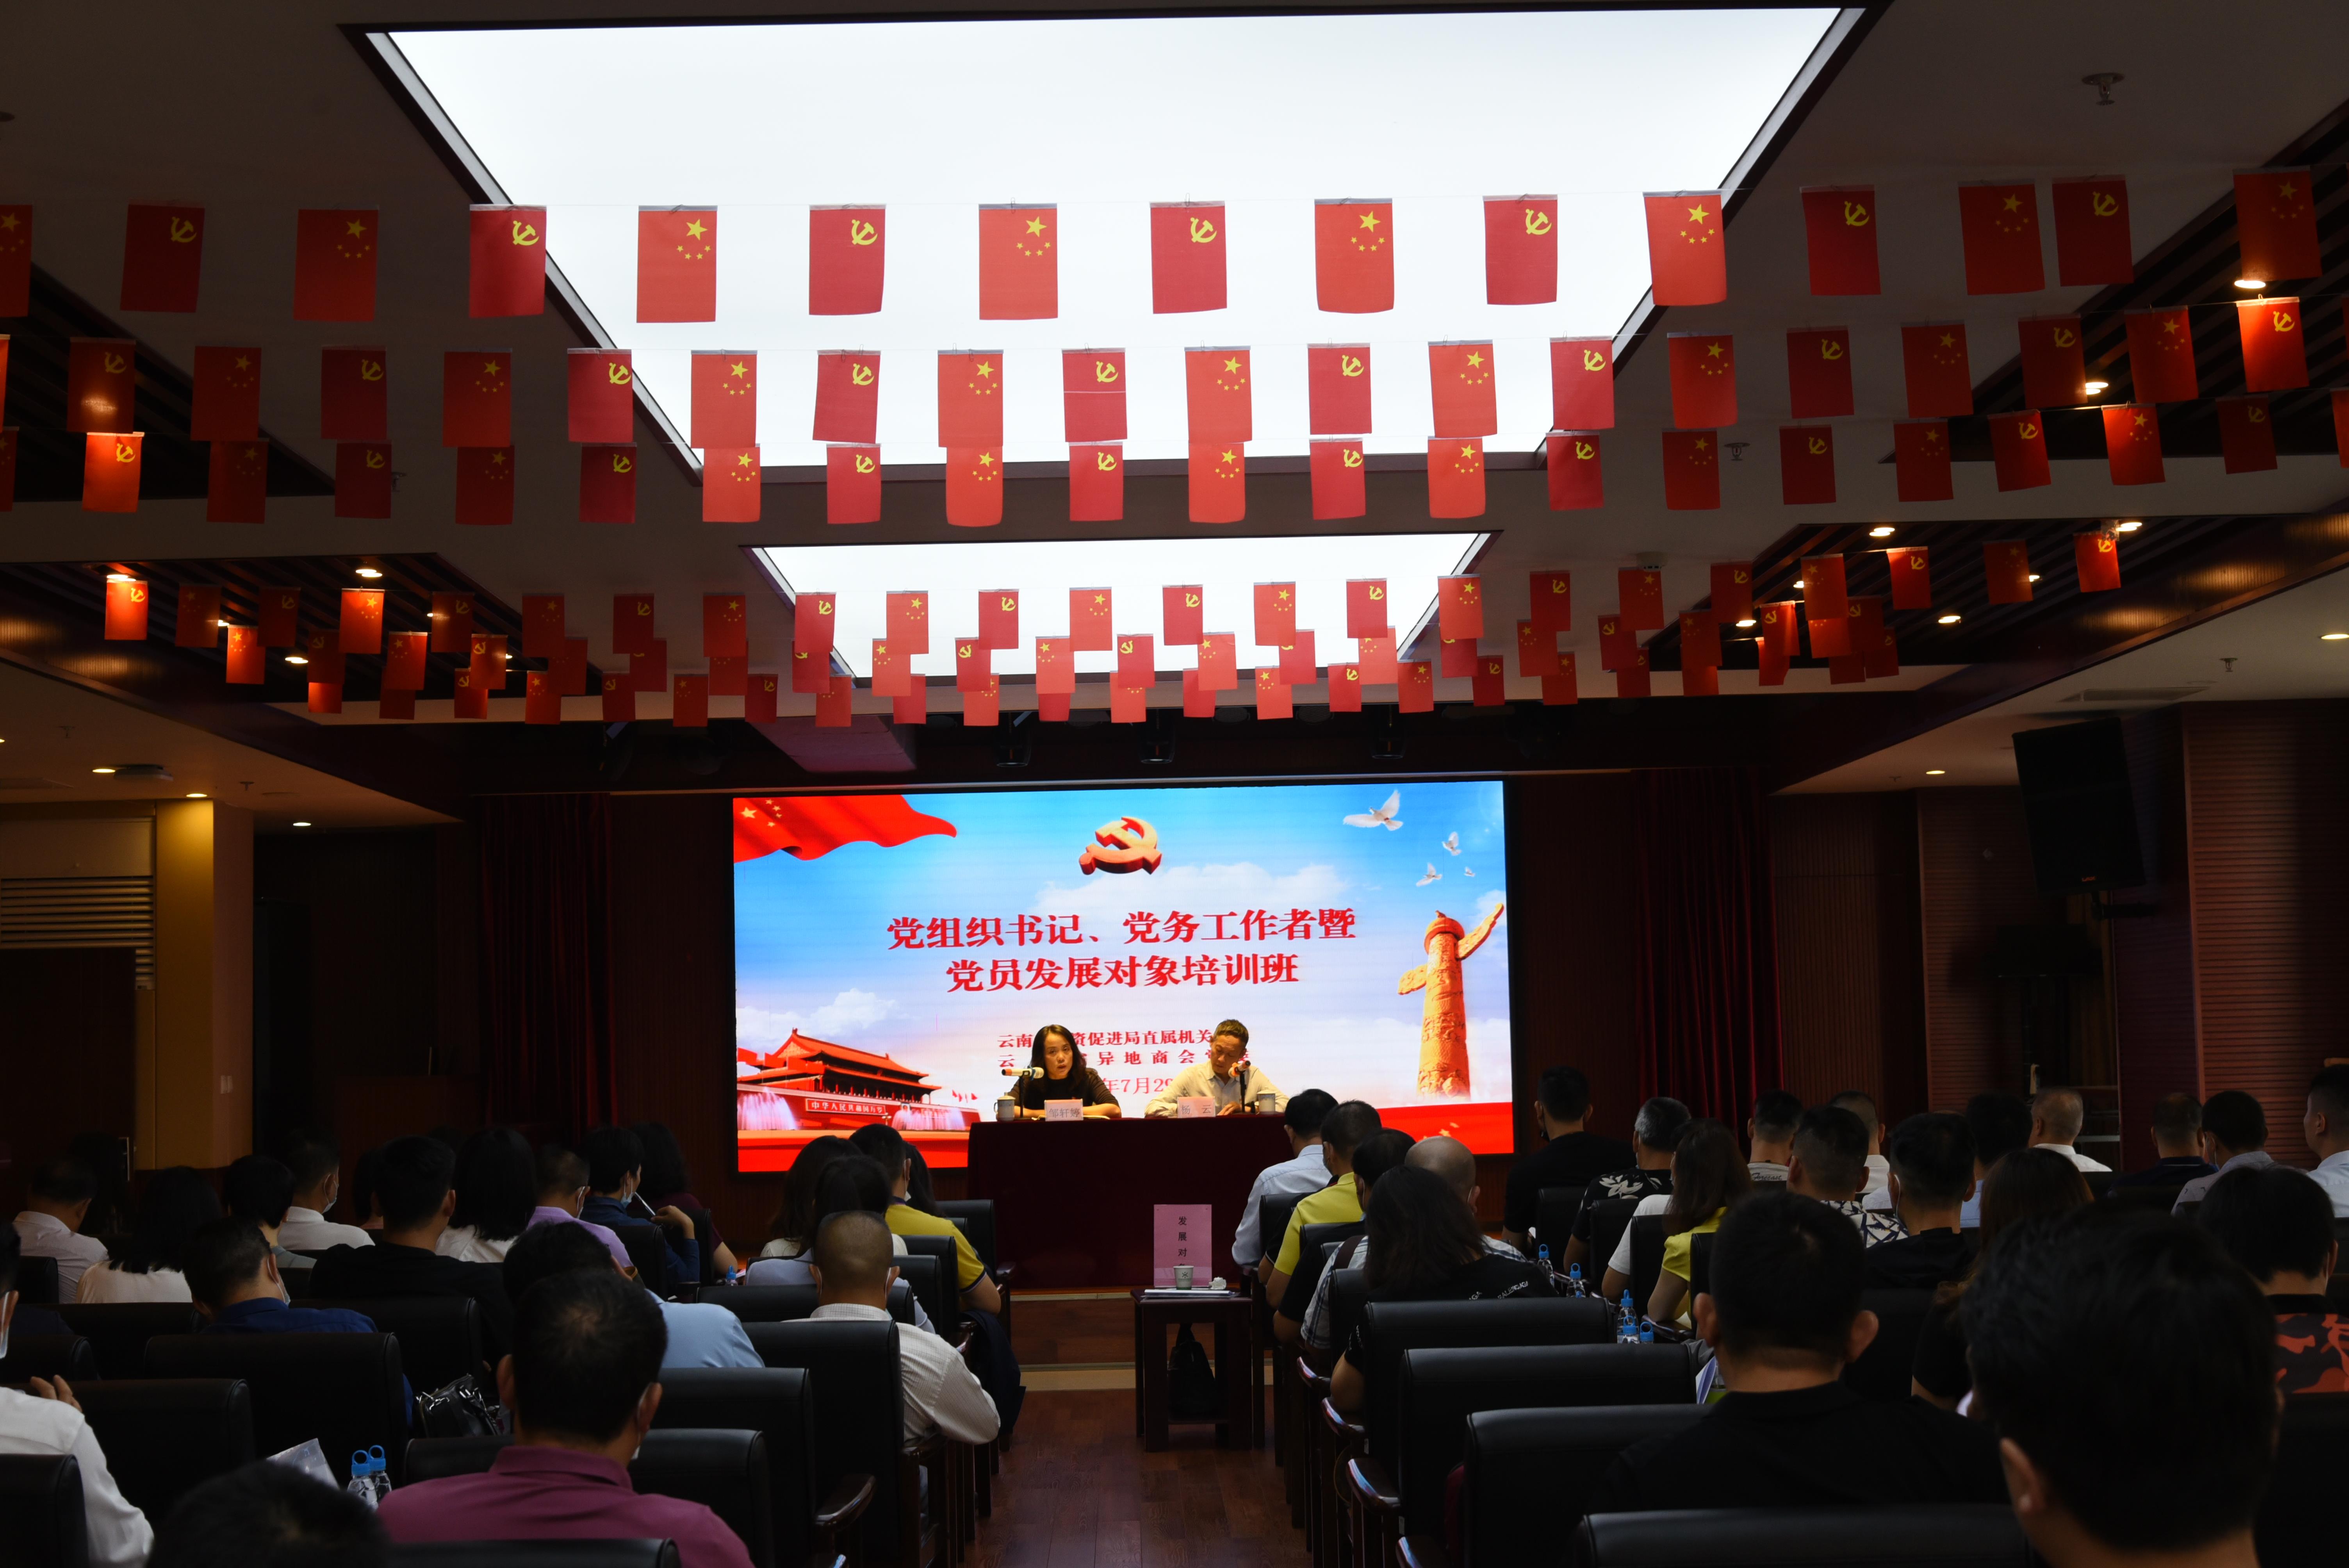 云南省异地商会党委2020年党员发展对象培训班顺利举行